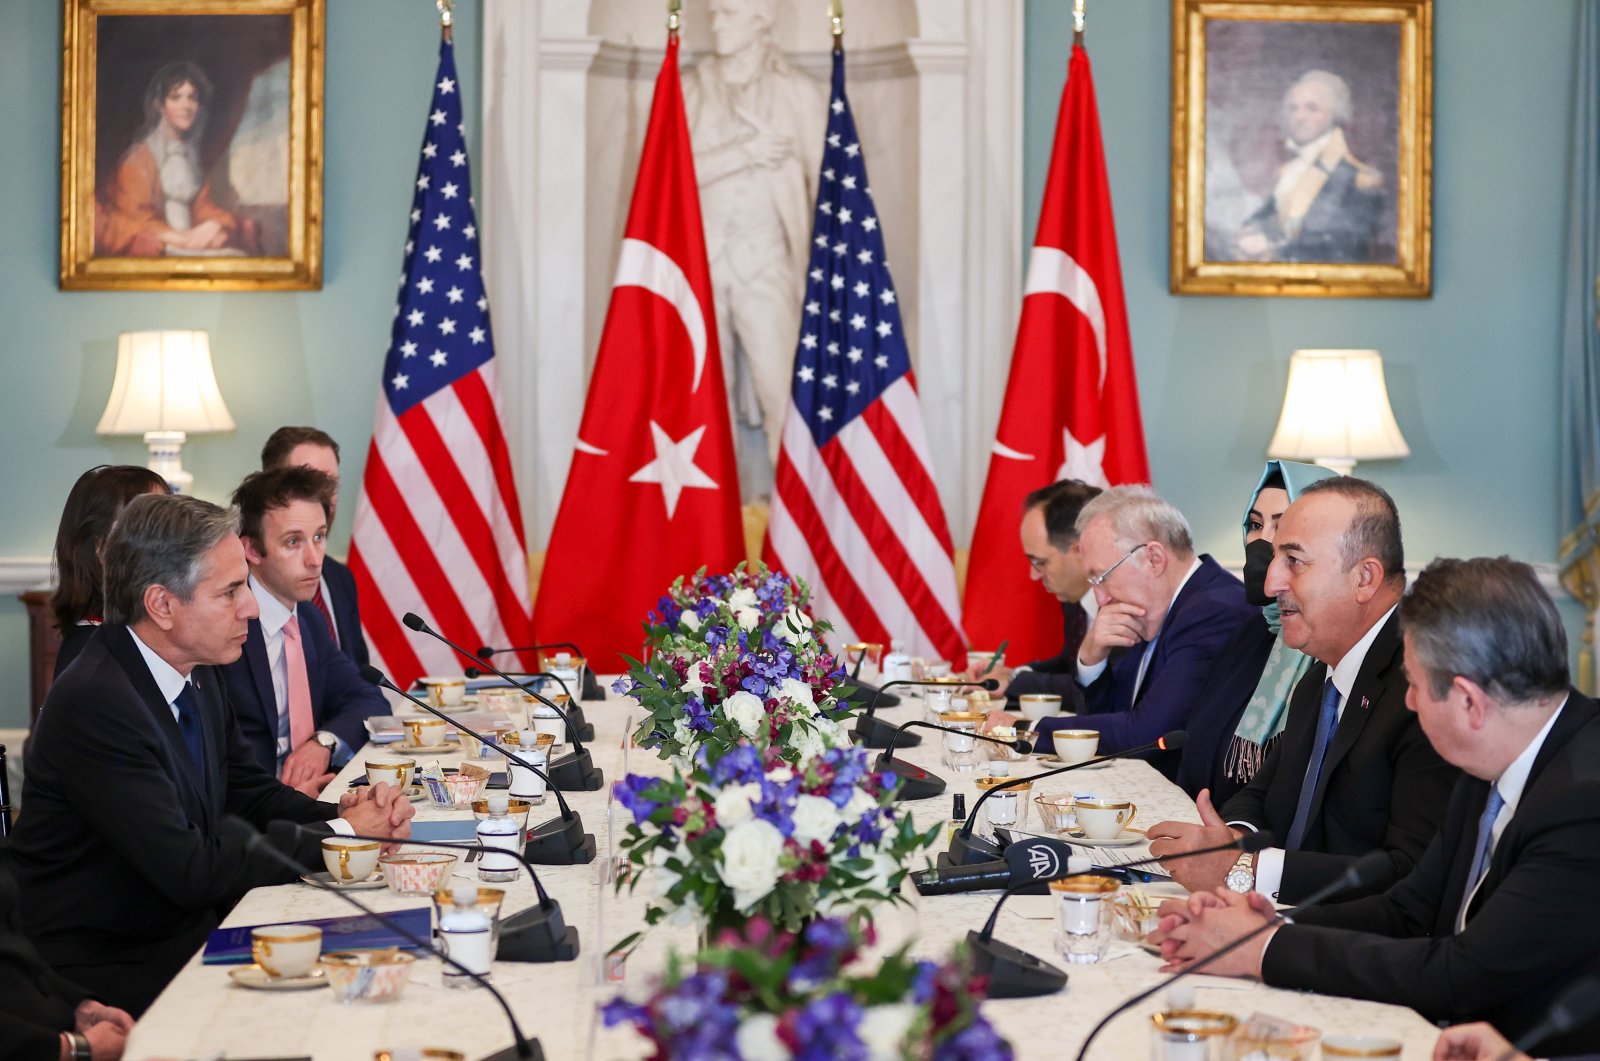 Türkiye mendesak AS untuk mempercepat proses F-16